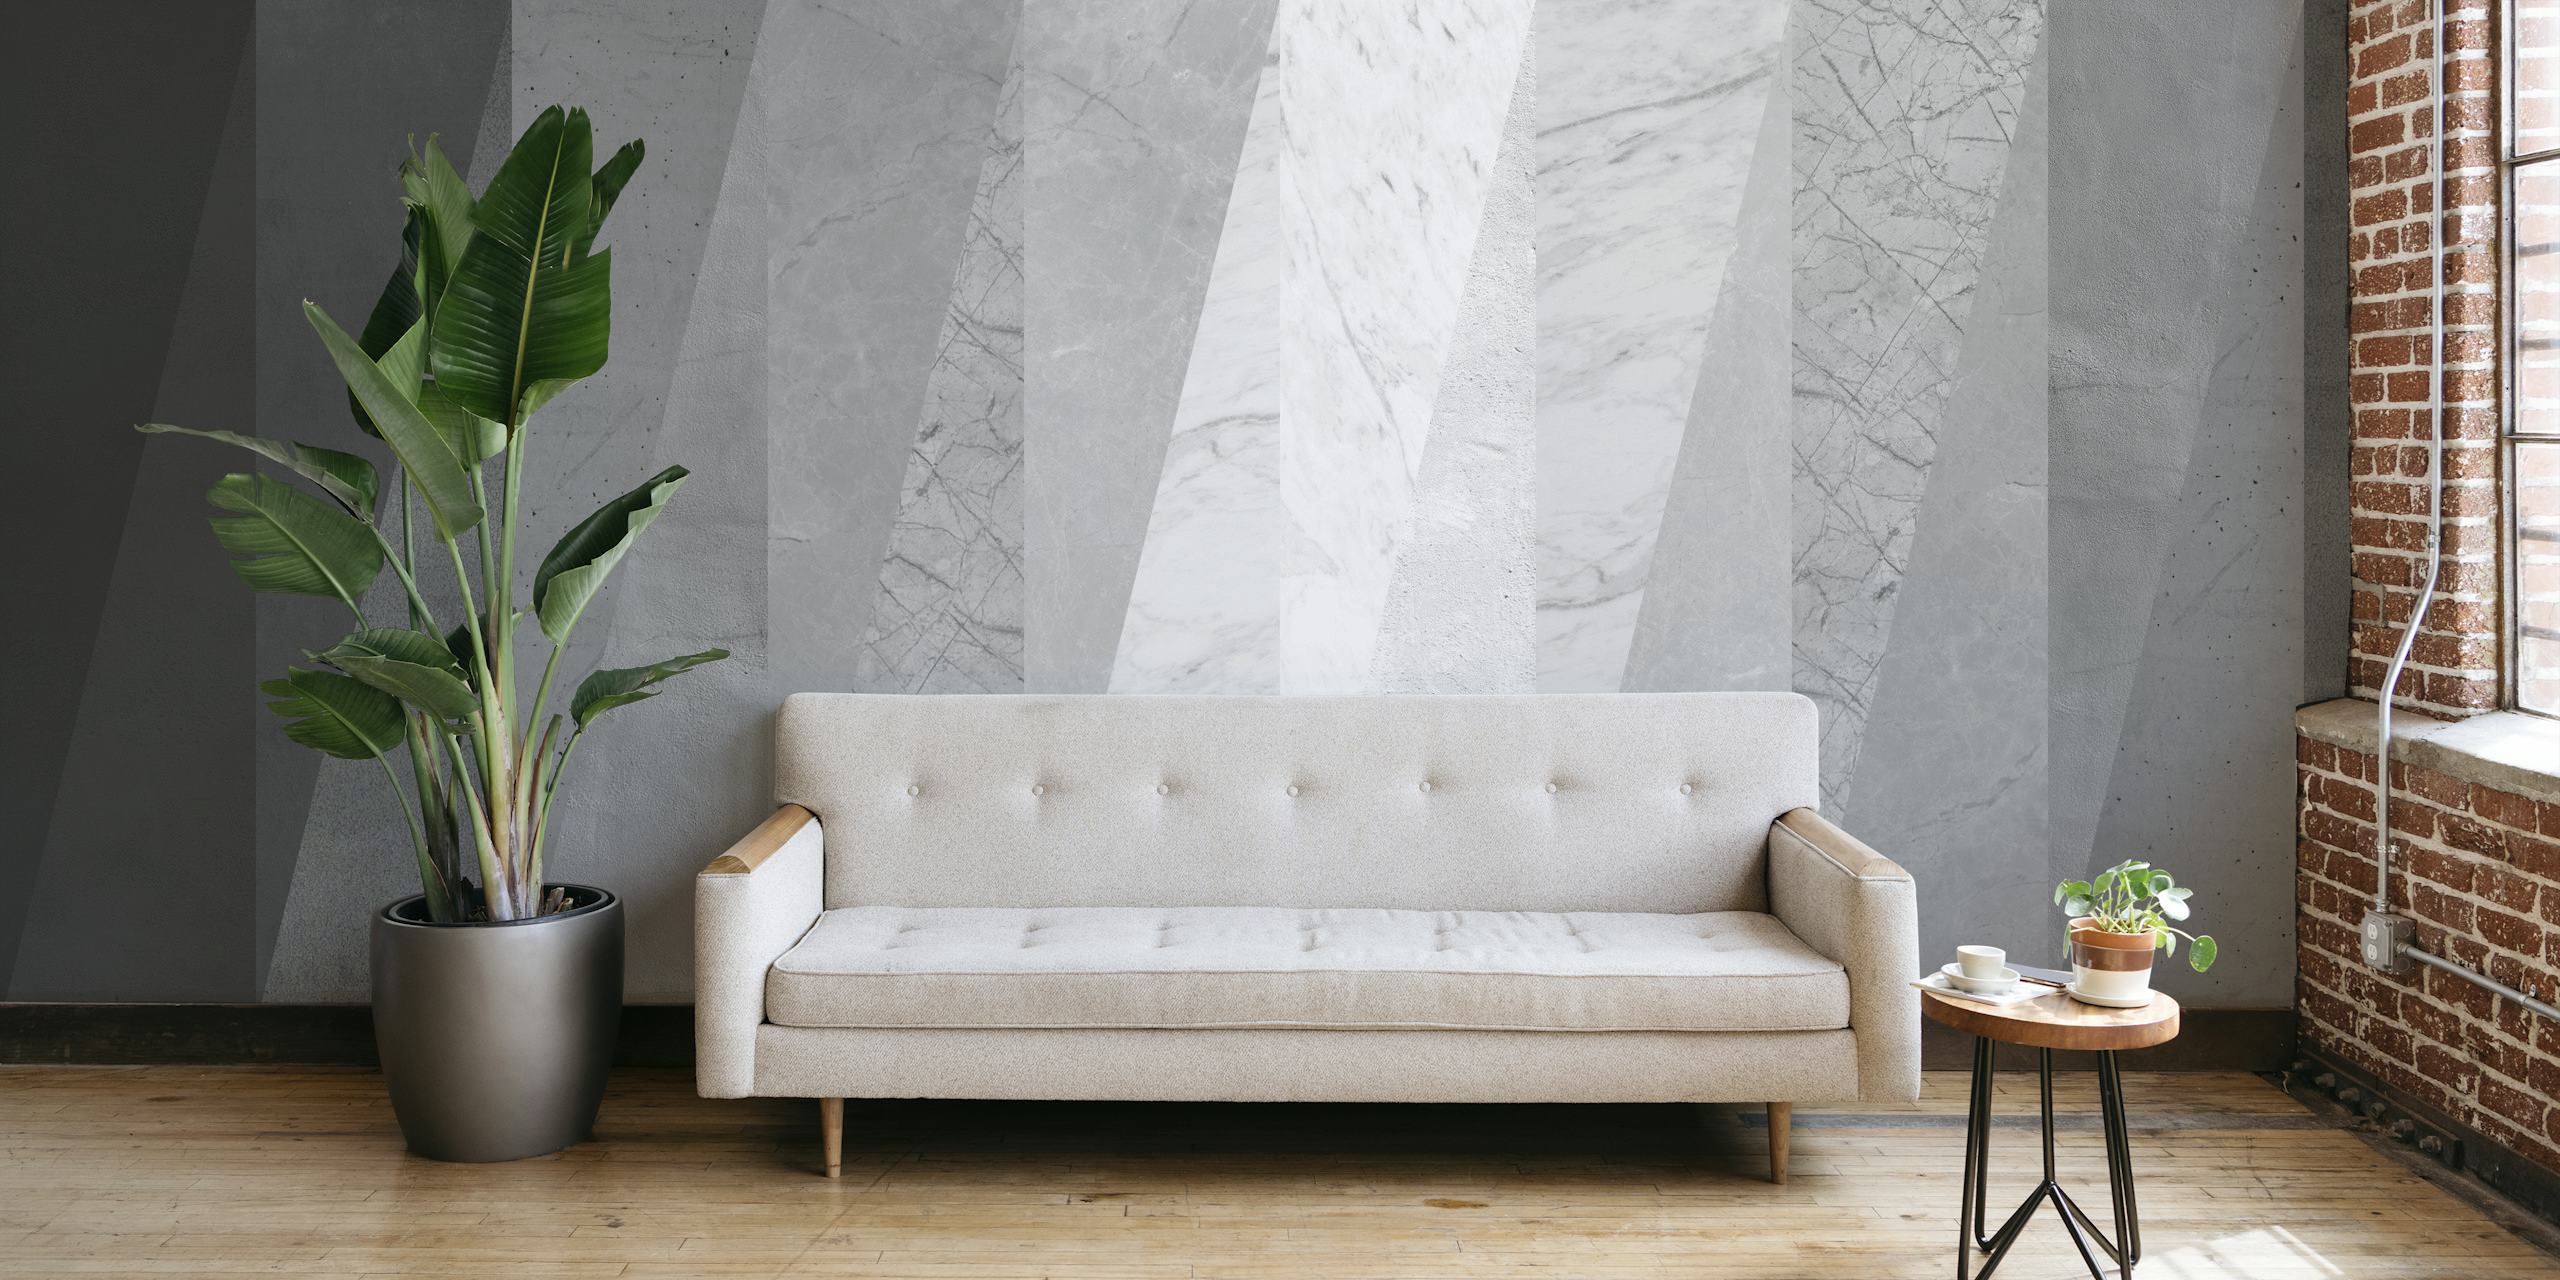 Tyylikäs harmaa marmorikuvioinen seinämaalaus osoitteesta happywall.com